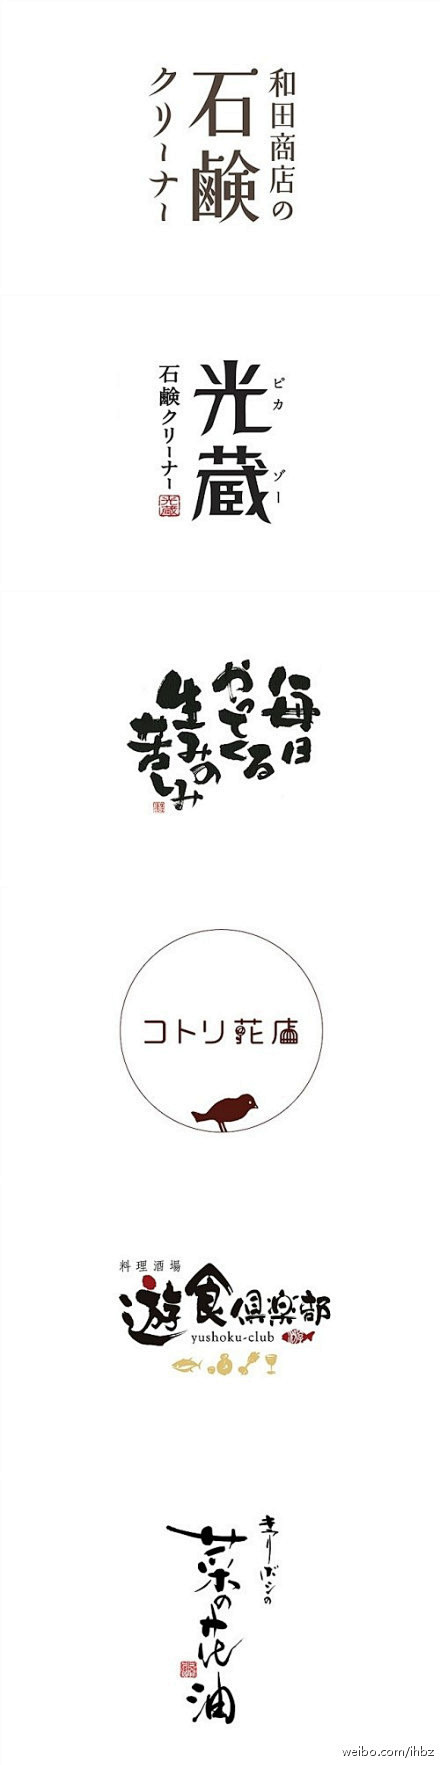 日本字体设计 BY HANY